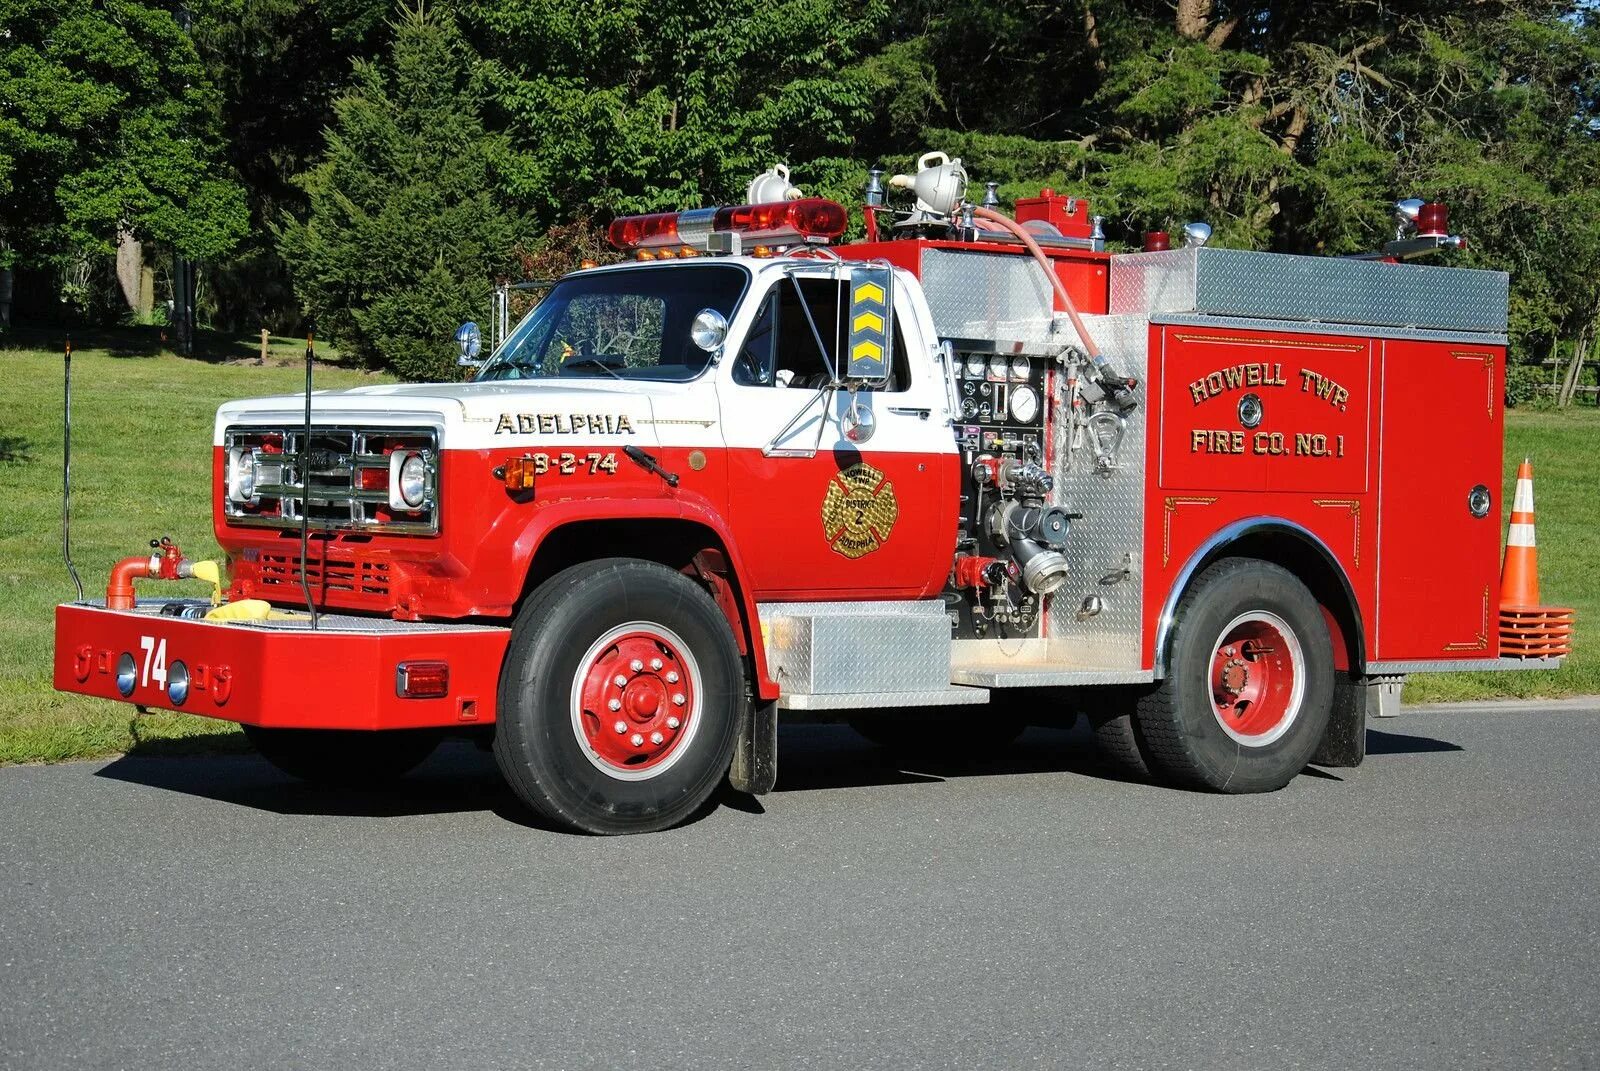 Пожарная машина Вандерберг 1901. АПС пожарная машина. АПС пожарный автомобиль. Пожарная машина США. Пожарный грузовик